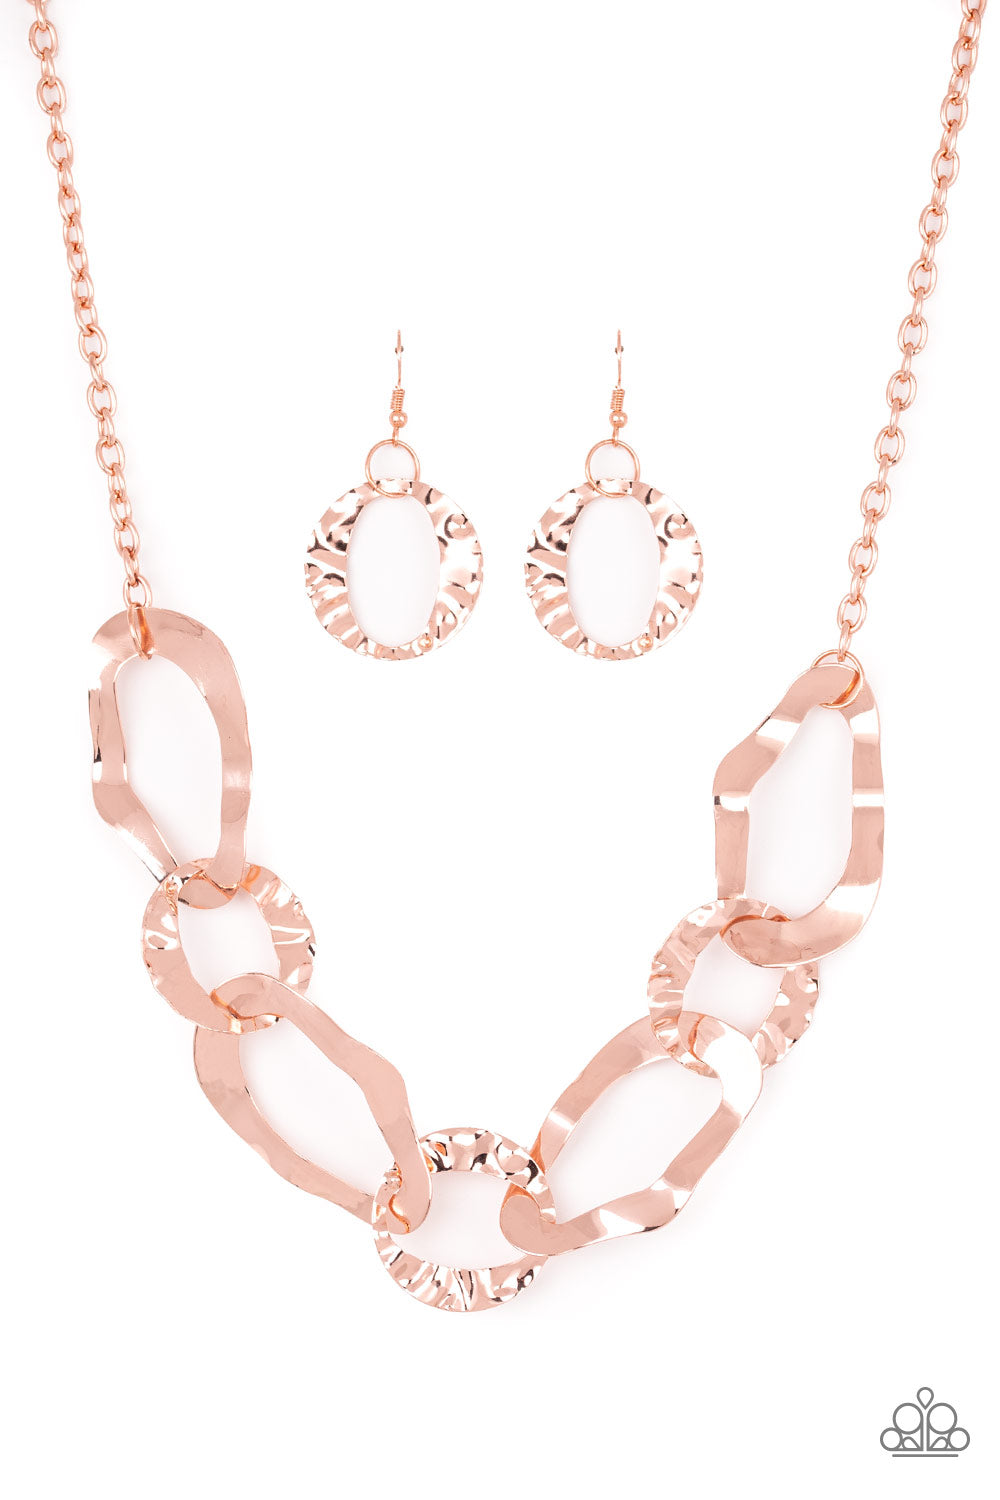 Capital Contour Copper Paparazzi Necklaces Cashmere Pink Jewels - Cashmere Pink Jewels & Accessories, Cashmere Pink Jewels & Accessories - Paparazzi